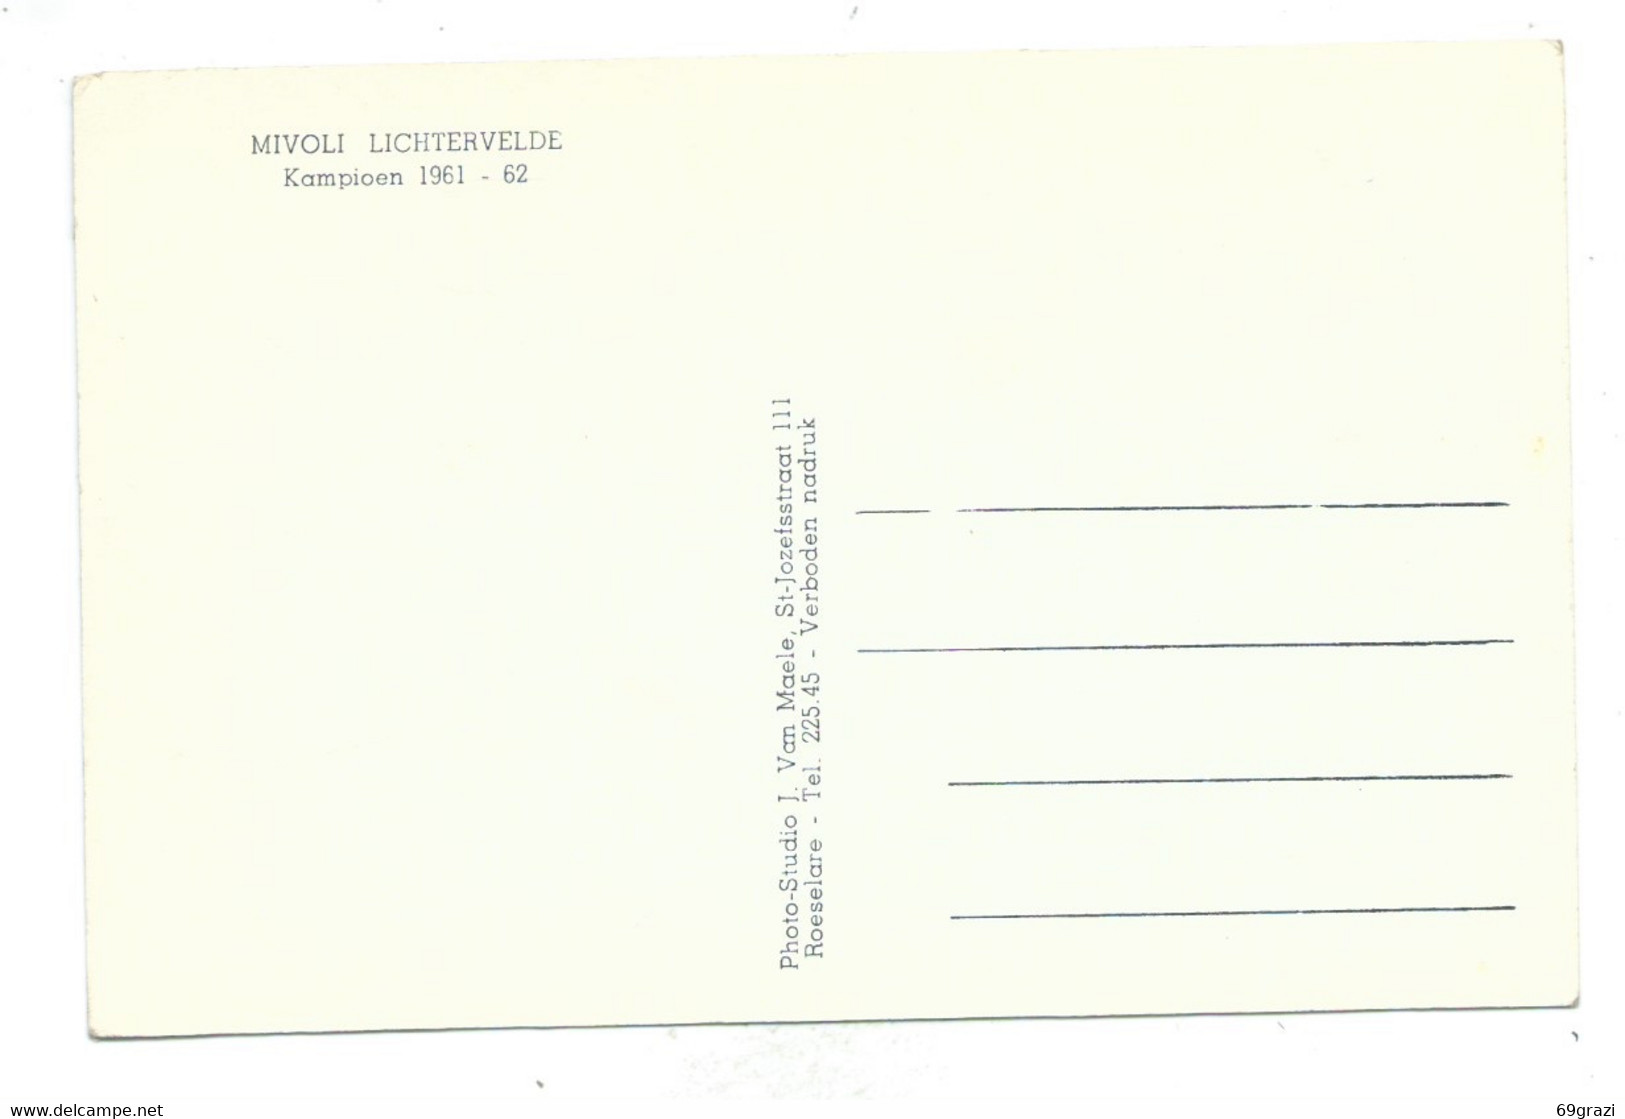 Lichtervelde Mivoli Kampioen 1961 / 1962 - Lichtervelde